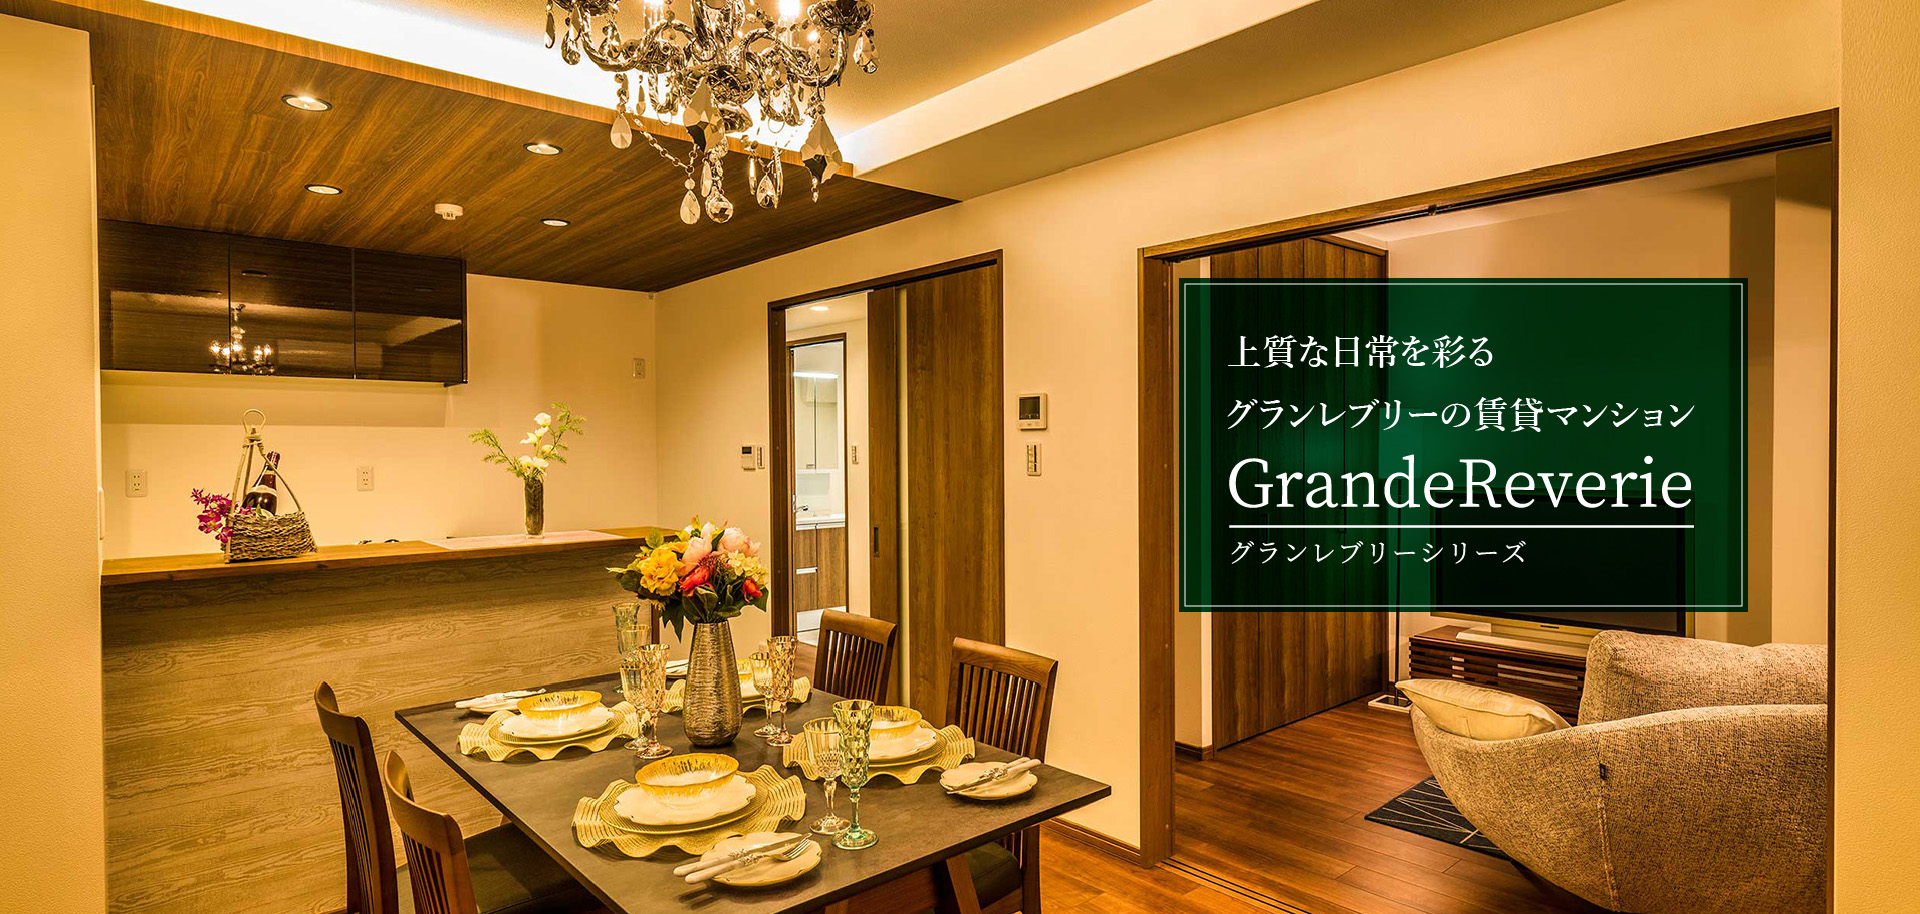 上質な日常を彩るグランレブリーの賃貸マンション「Grandereverie グランレブリーシリーズ」